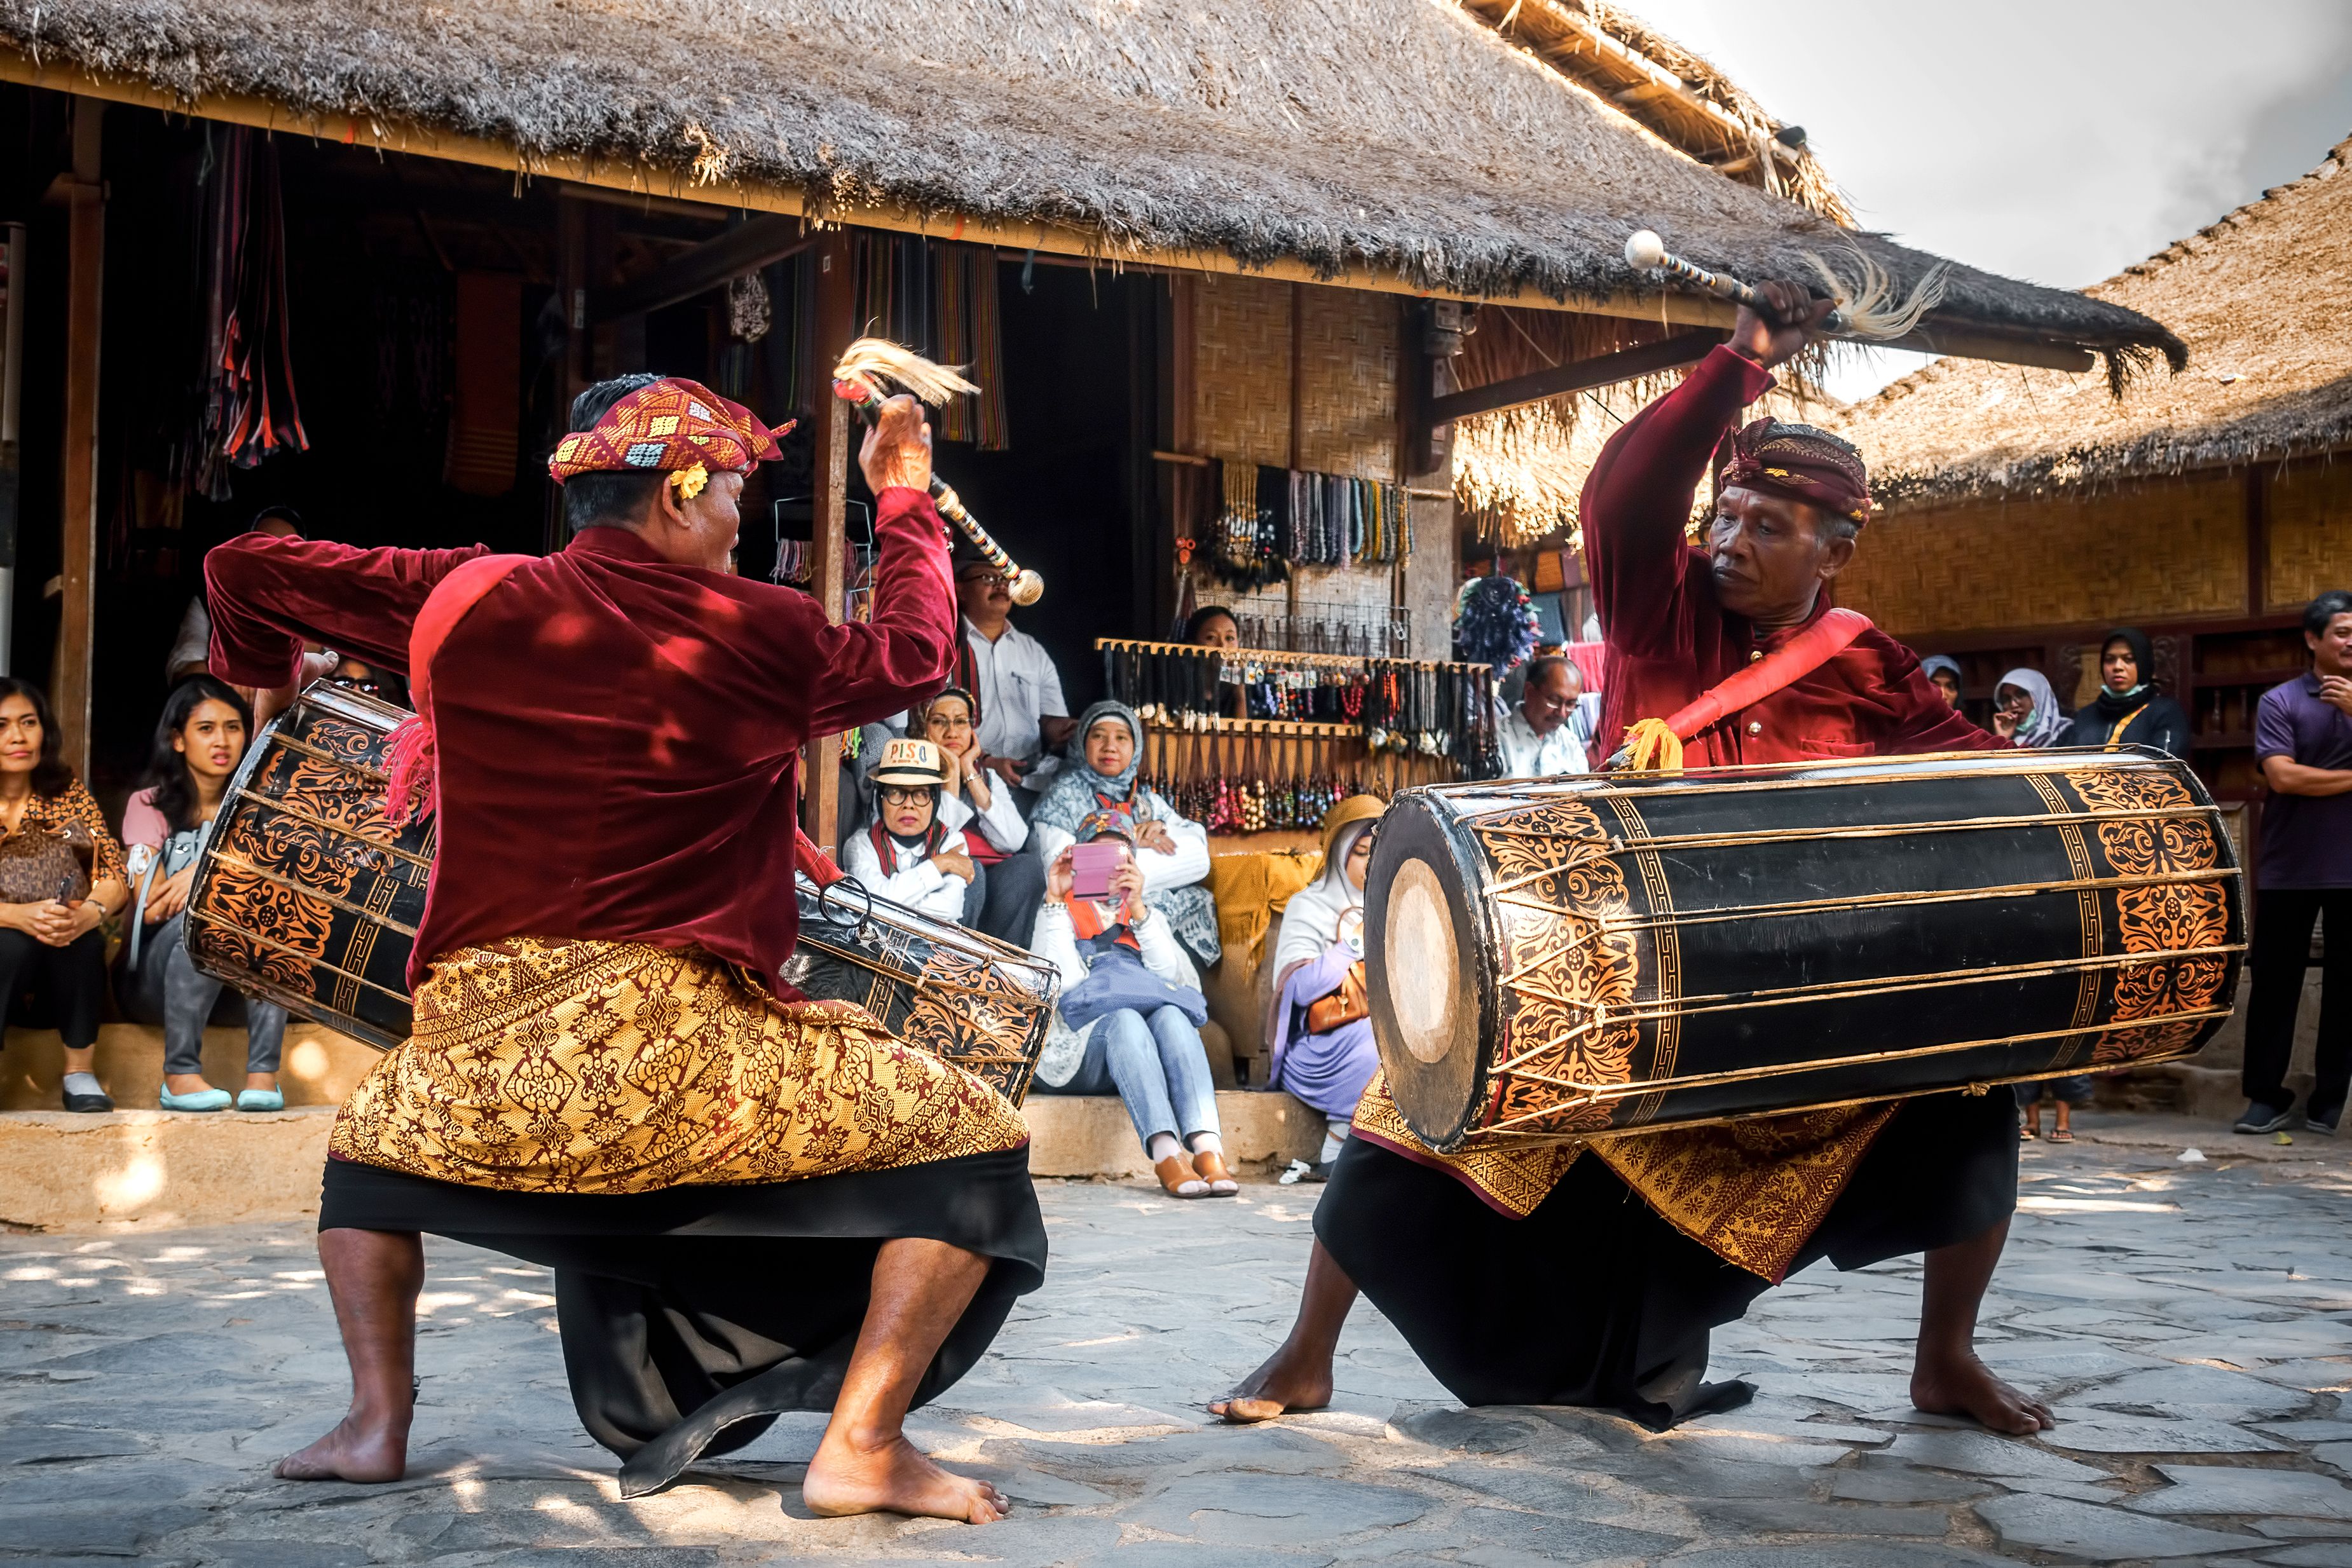 Atraksi wisata yang dipertunjukan di Desa Wisata Sade, Lombok. (Foto: Shutterstock/Farizun Amrod Saad)